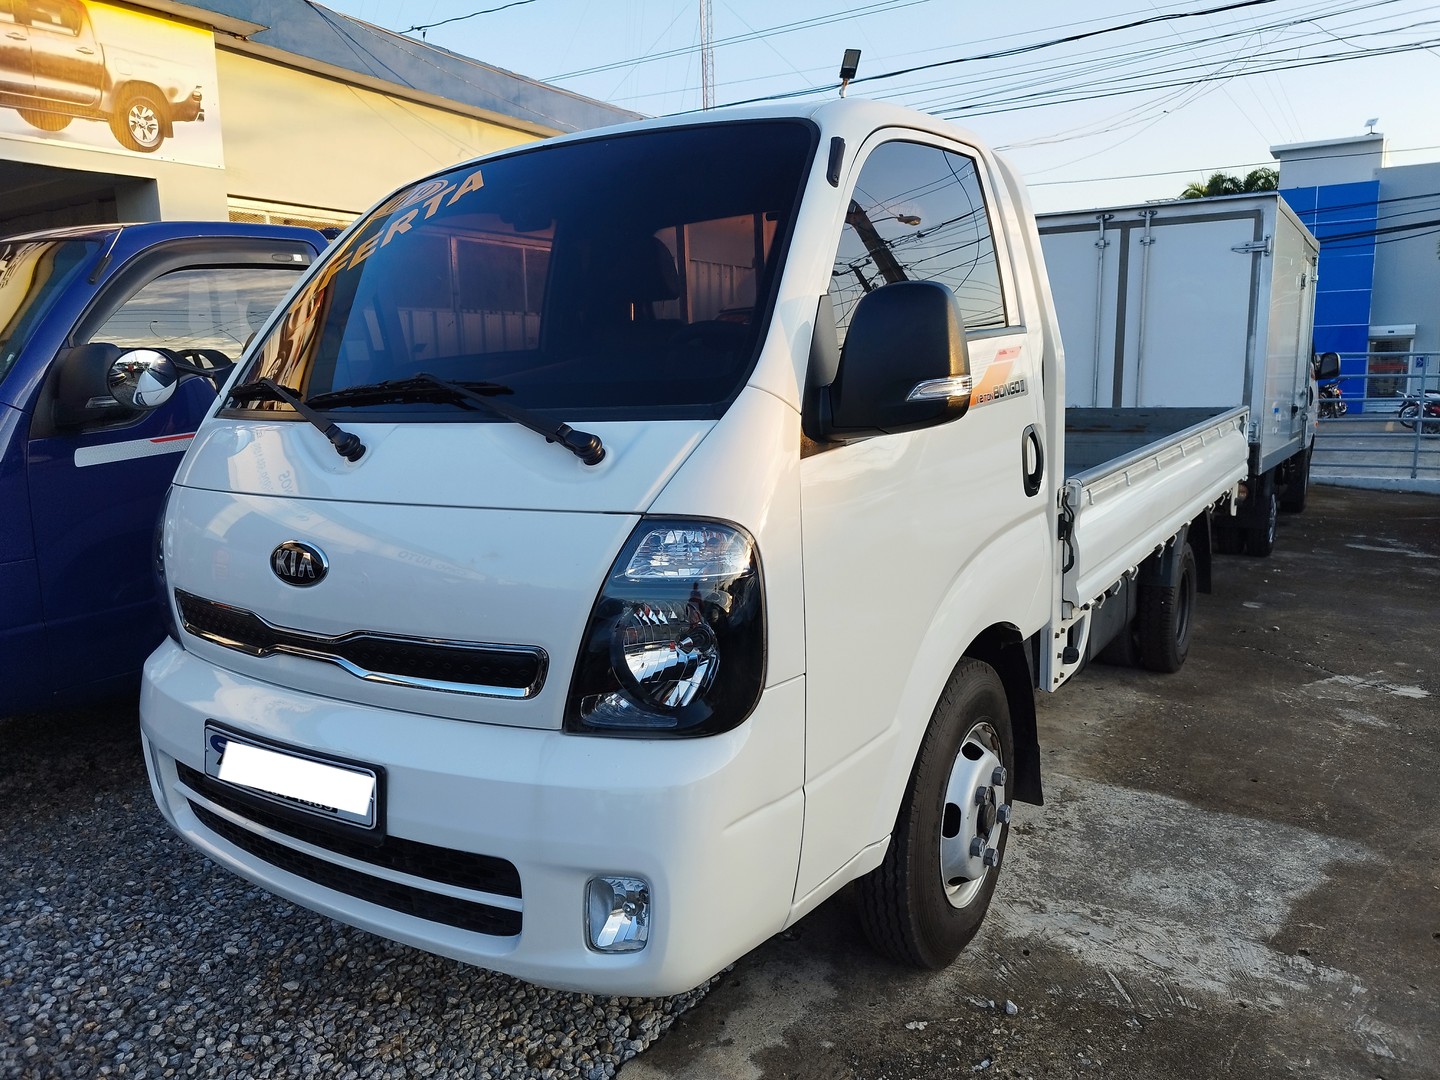 camiones y vehiculos pesados - 2019 Kia Bongo III Diesel 